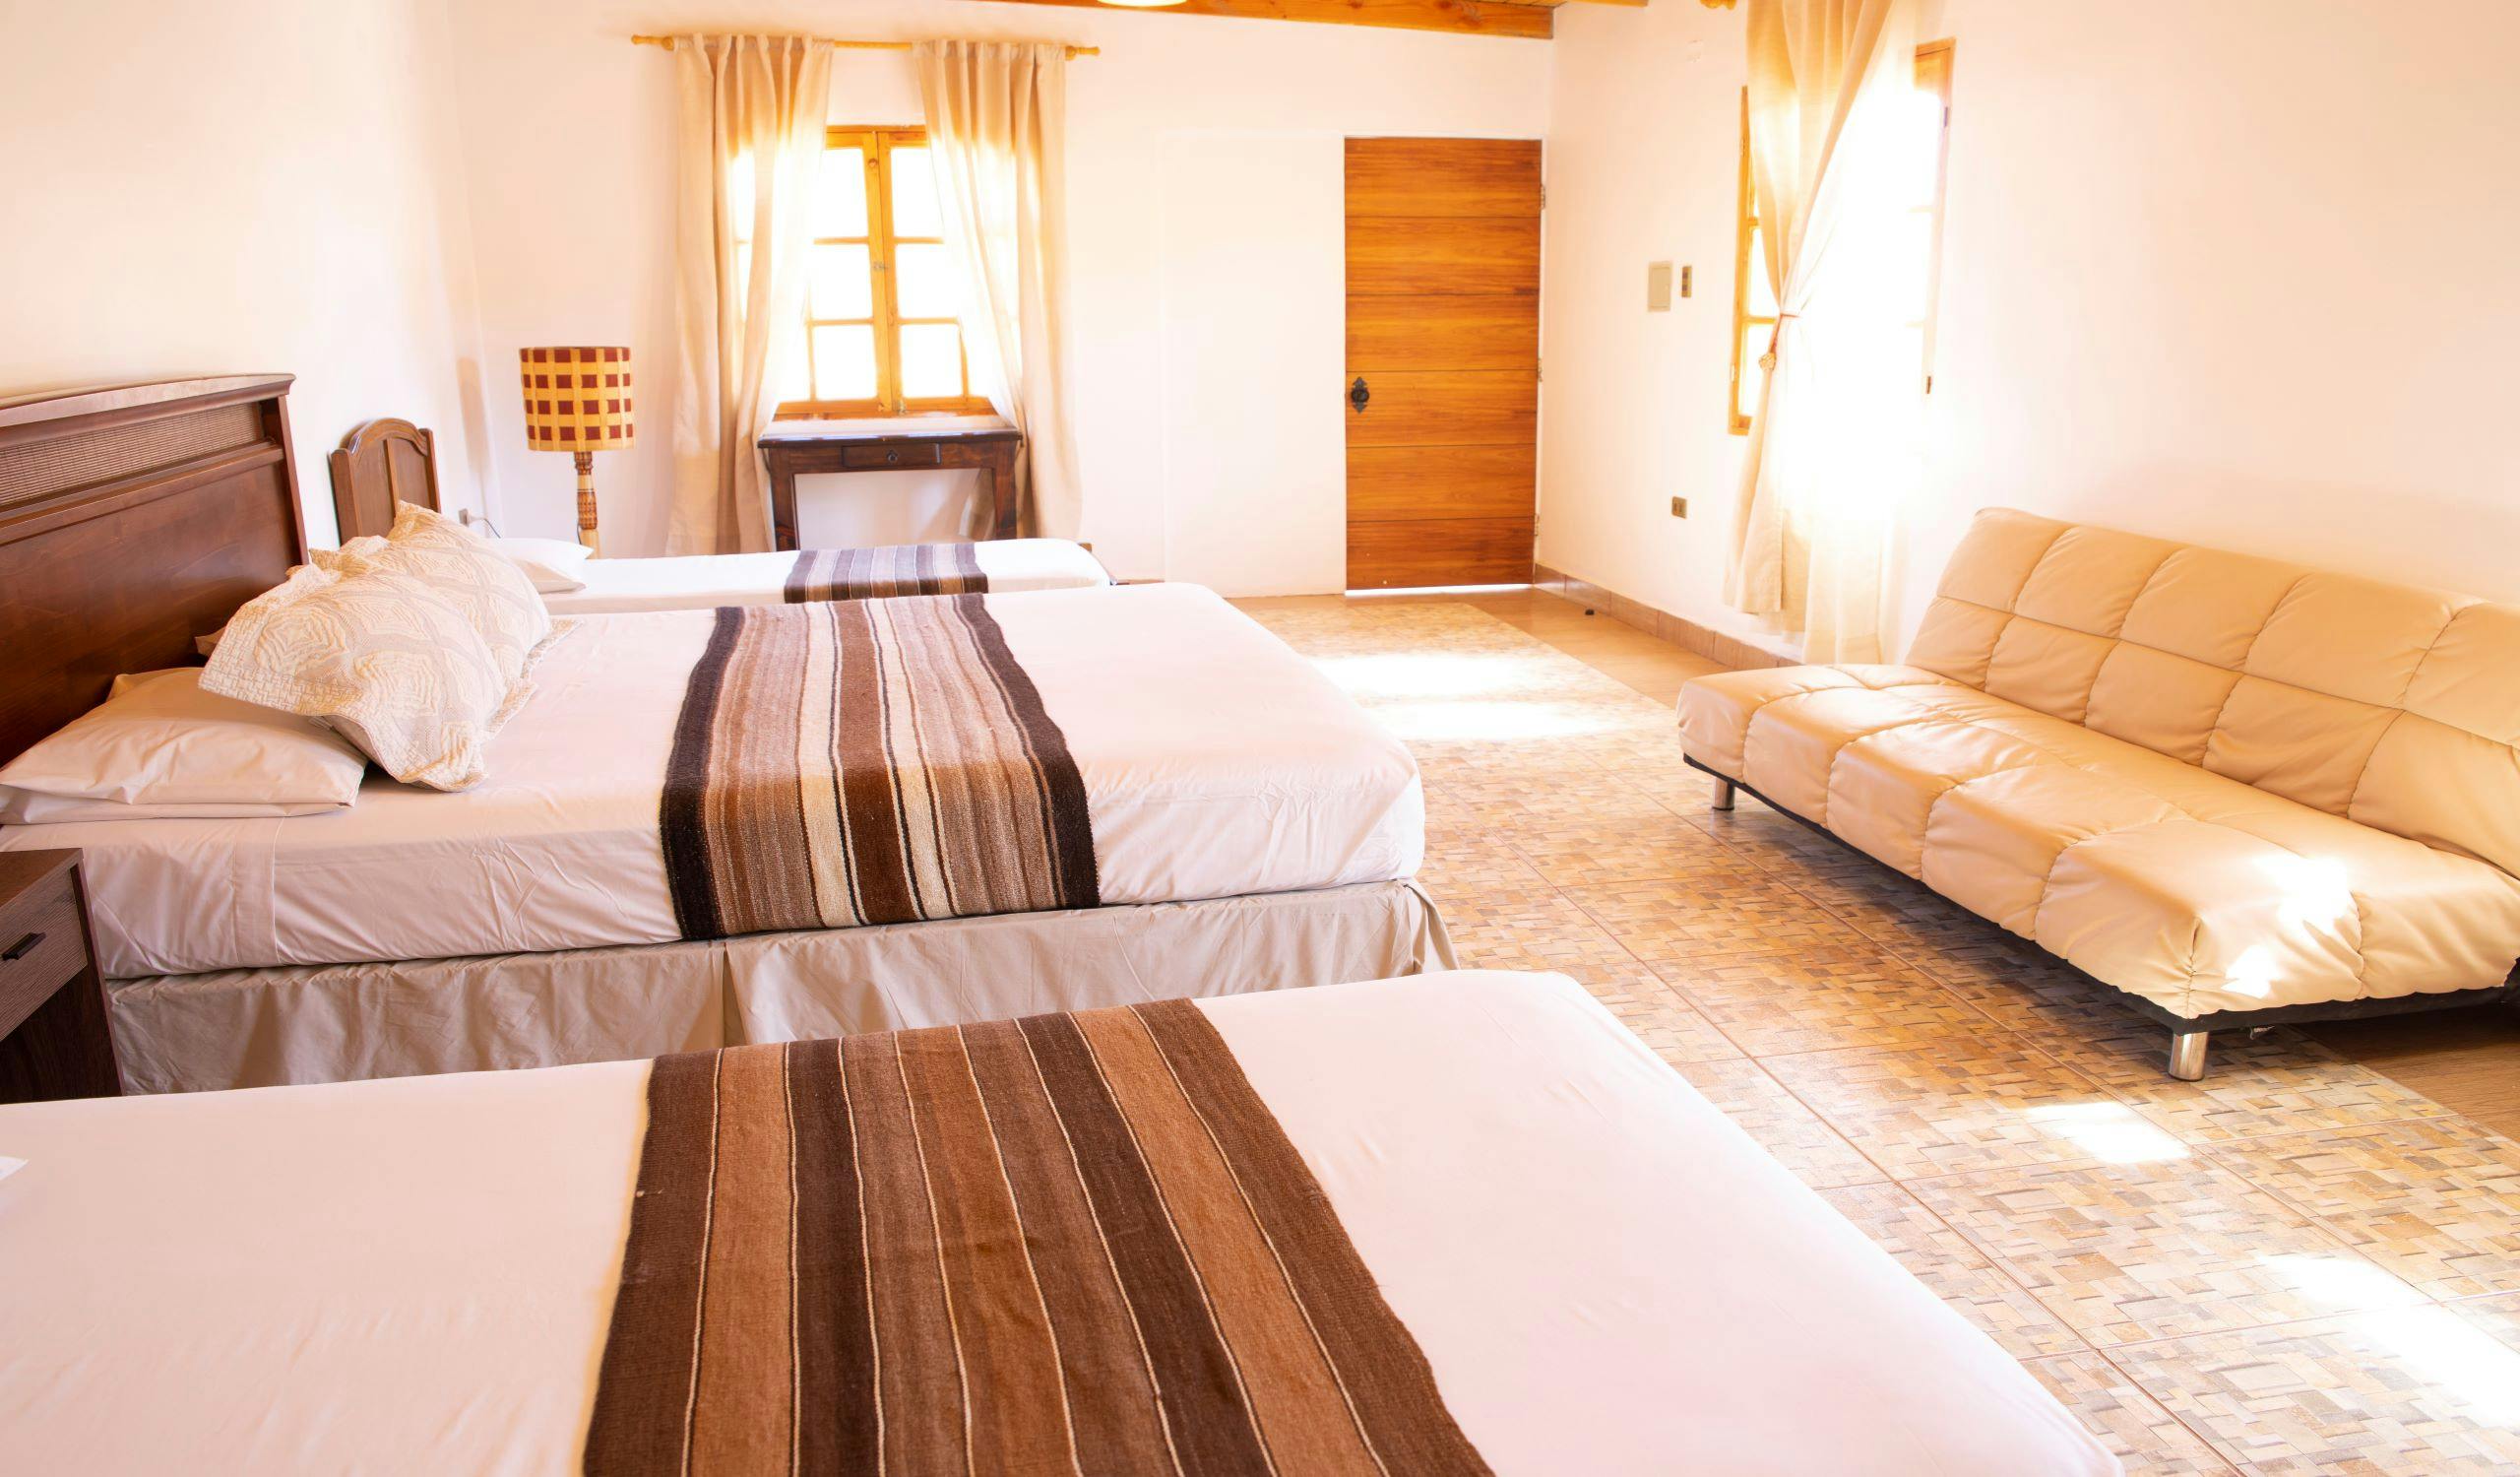 B&B Casa Lickana en el centro de San Pedro de Atacama cuenta con ocho habitaciones con baño privado.